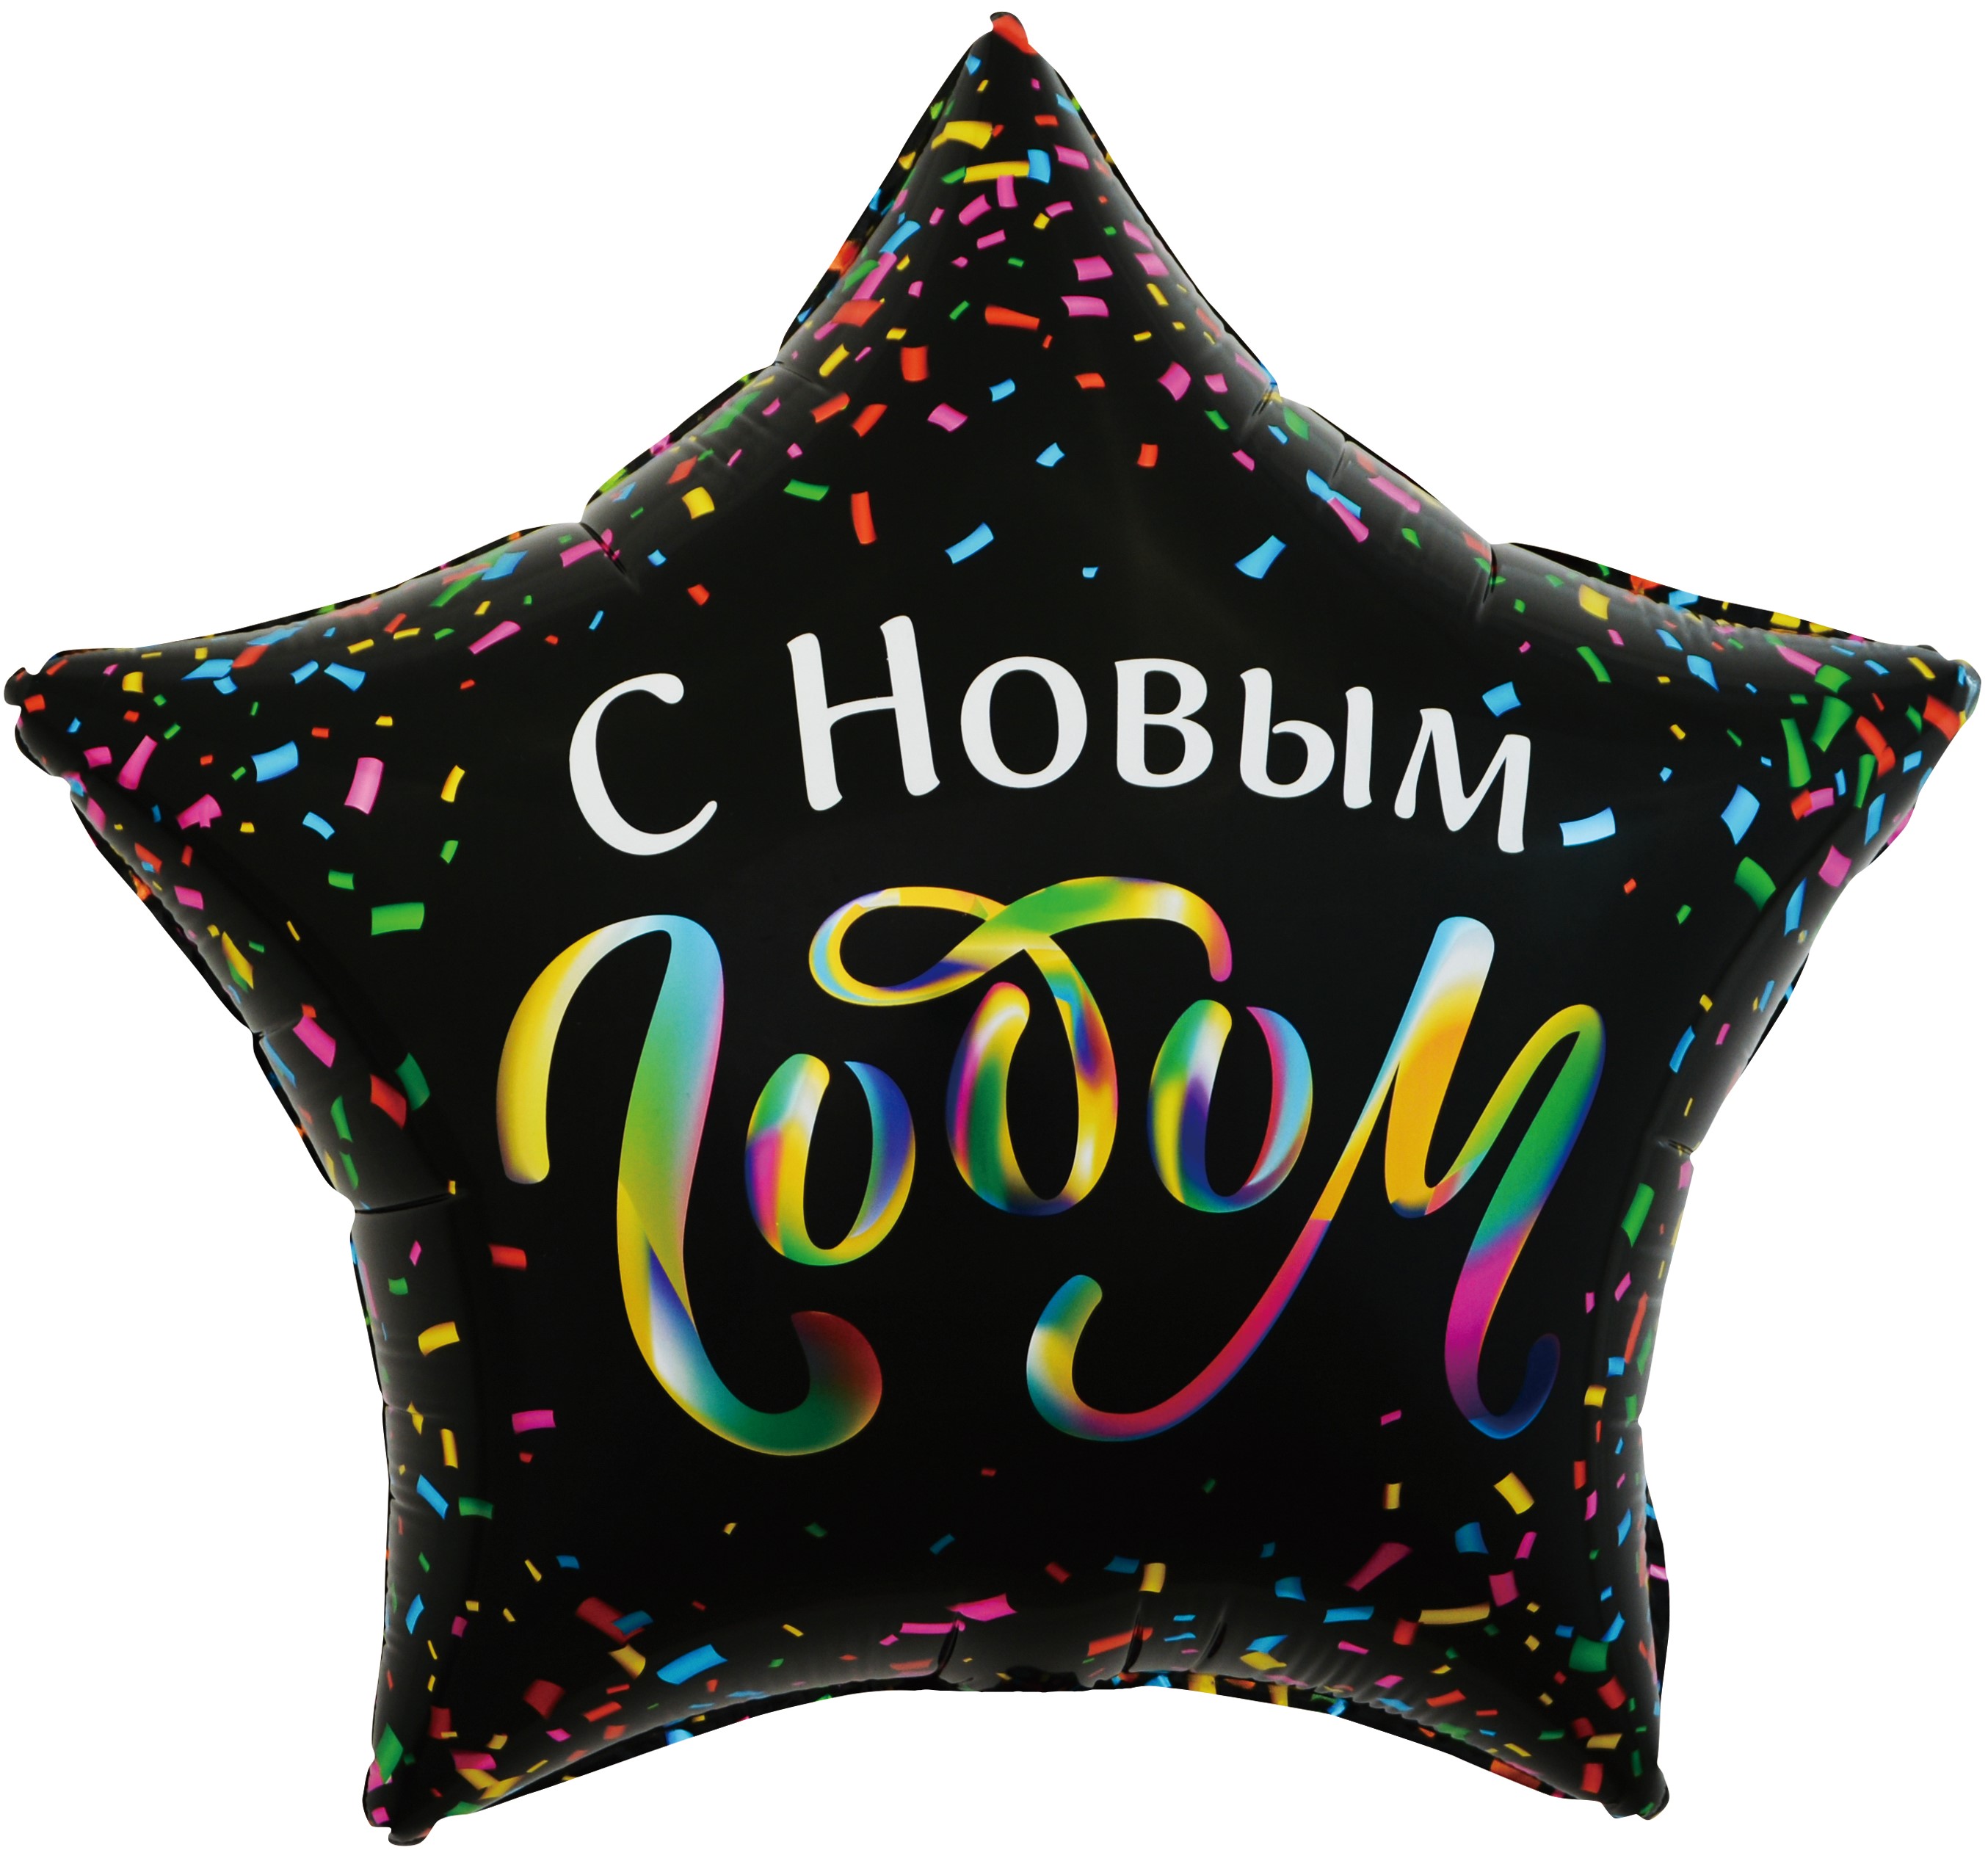 Шар Х 22" Звезда, С Новым Годом (разноцветное конфетти), Черный от магазина Сфера Новосибирск